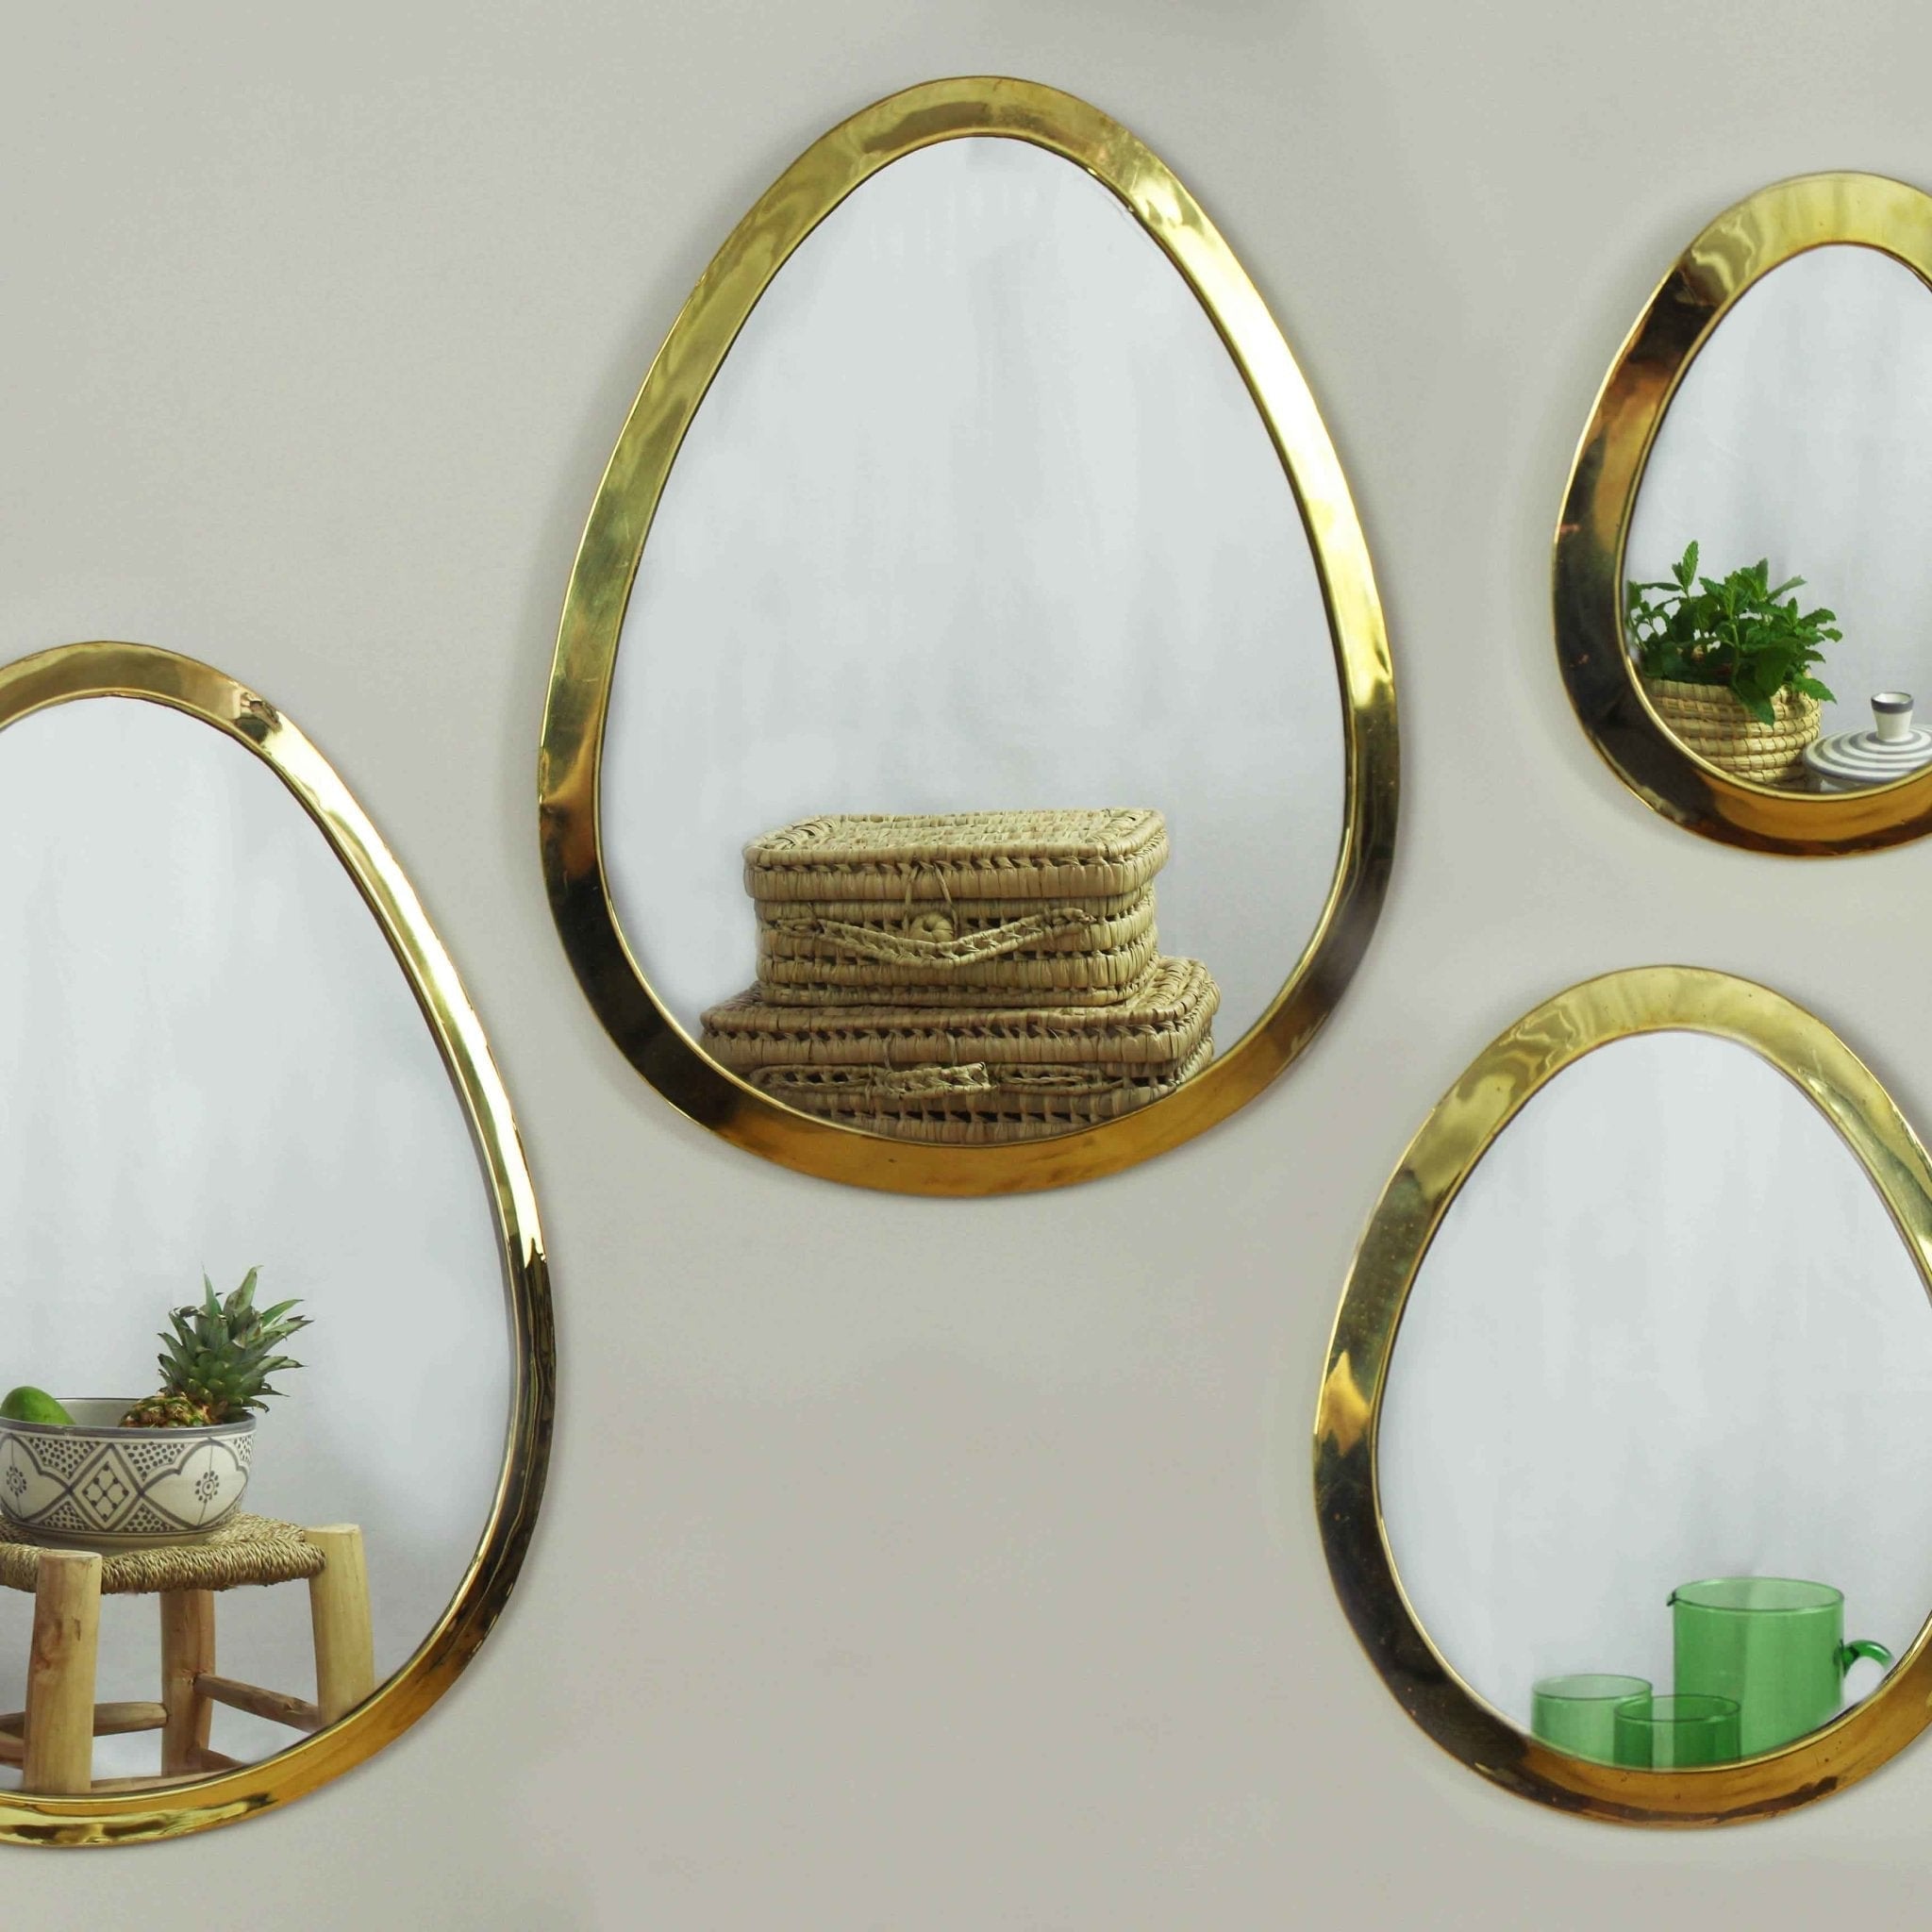 Marrakech Egg Mirror in Golden Brass - Artisan Stories